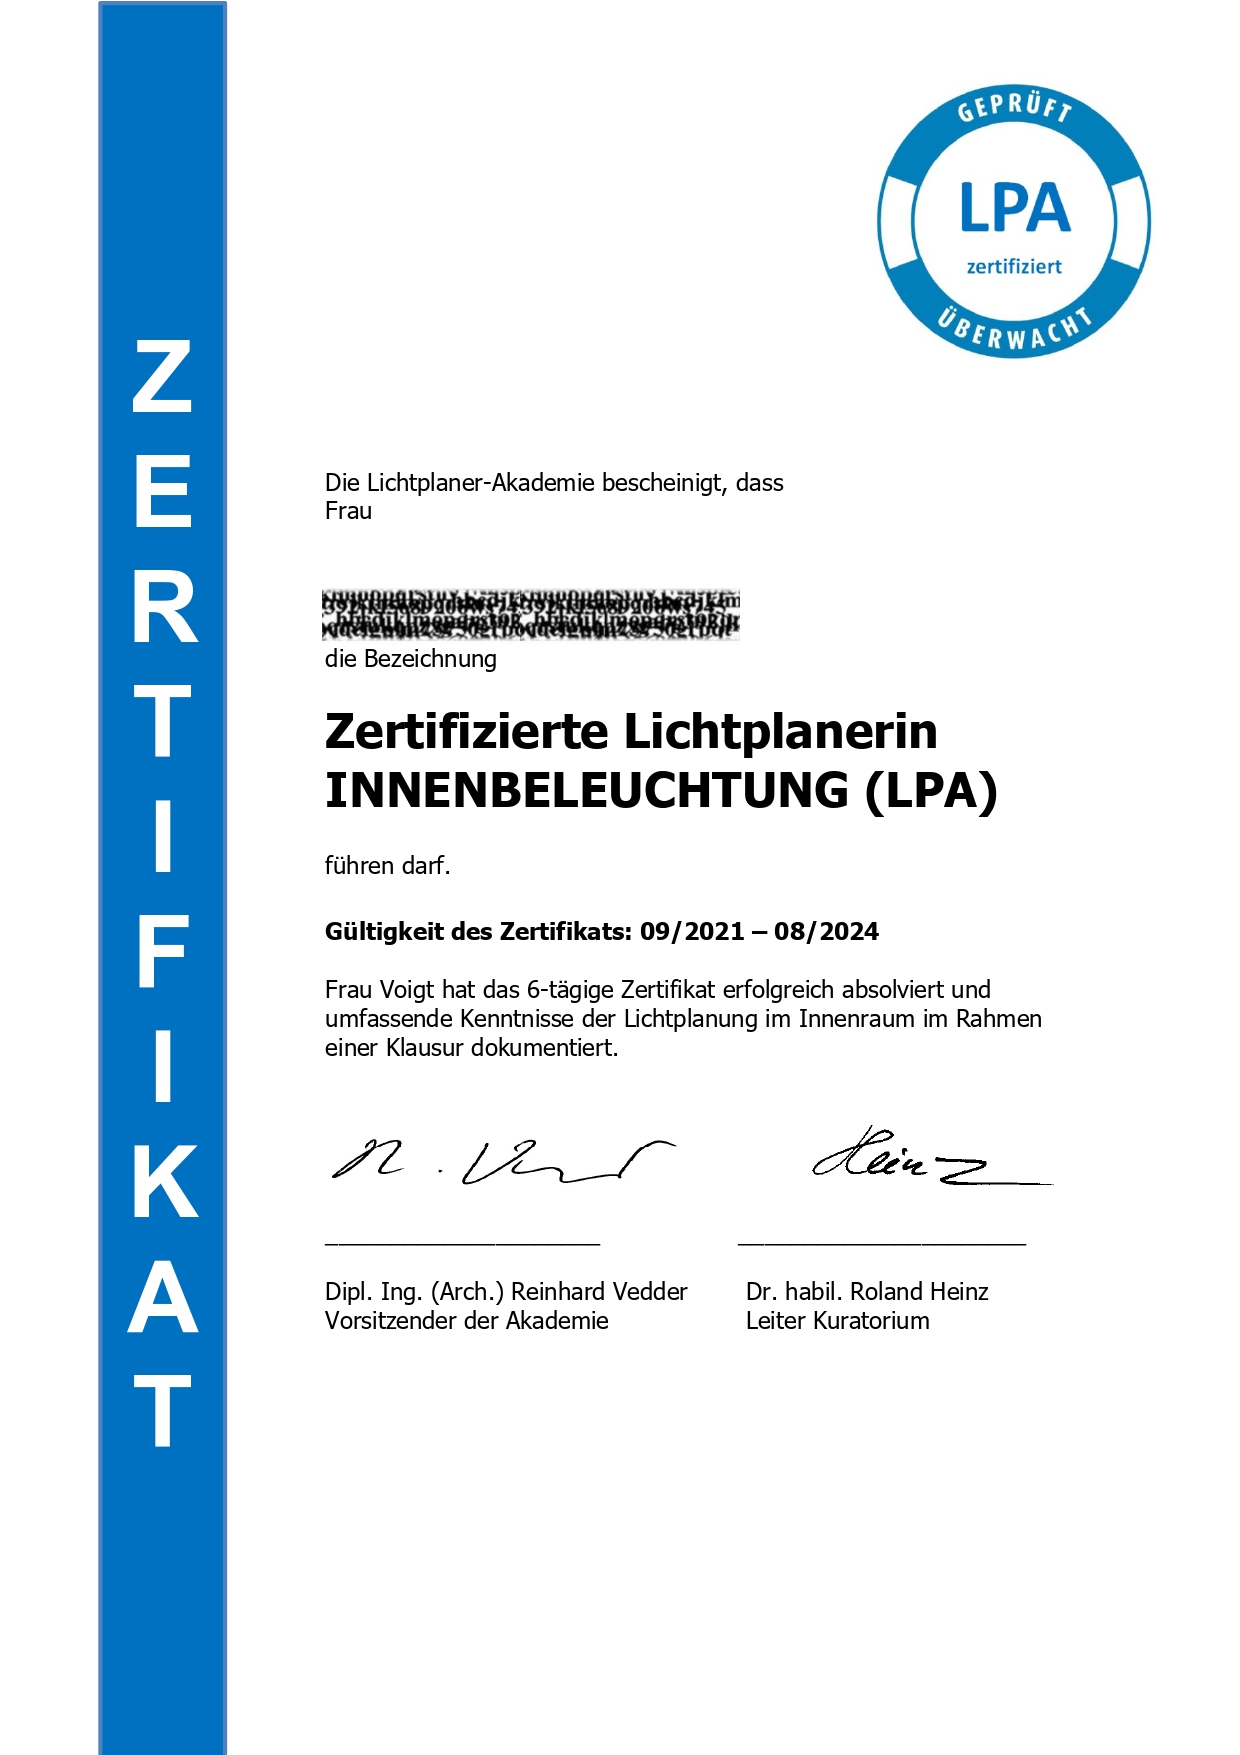 sineplan - Zertifikat LPA 2021 Lichtplaner fuer die  Innenbeleuchtung